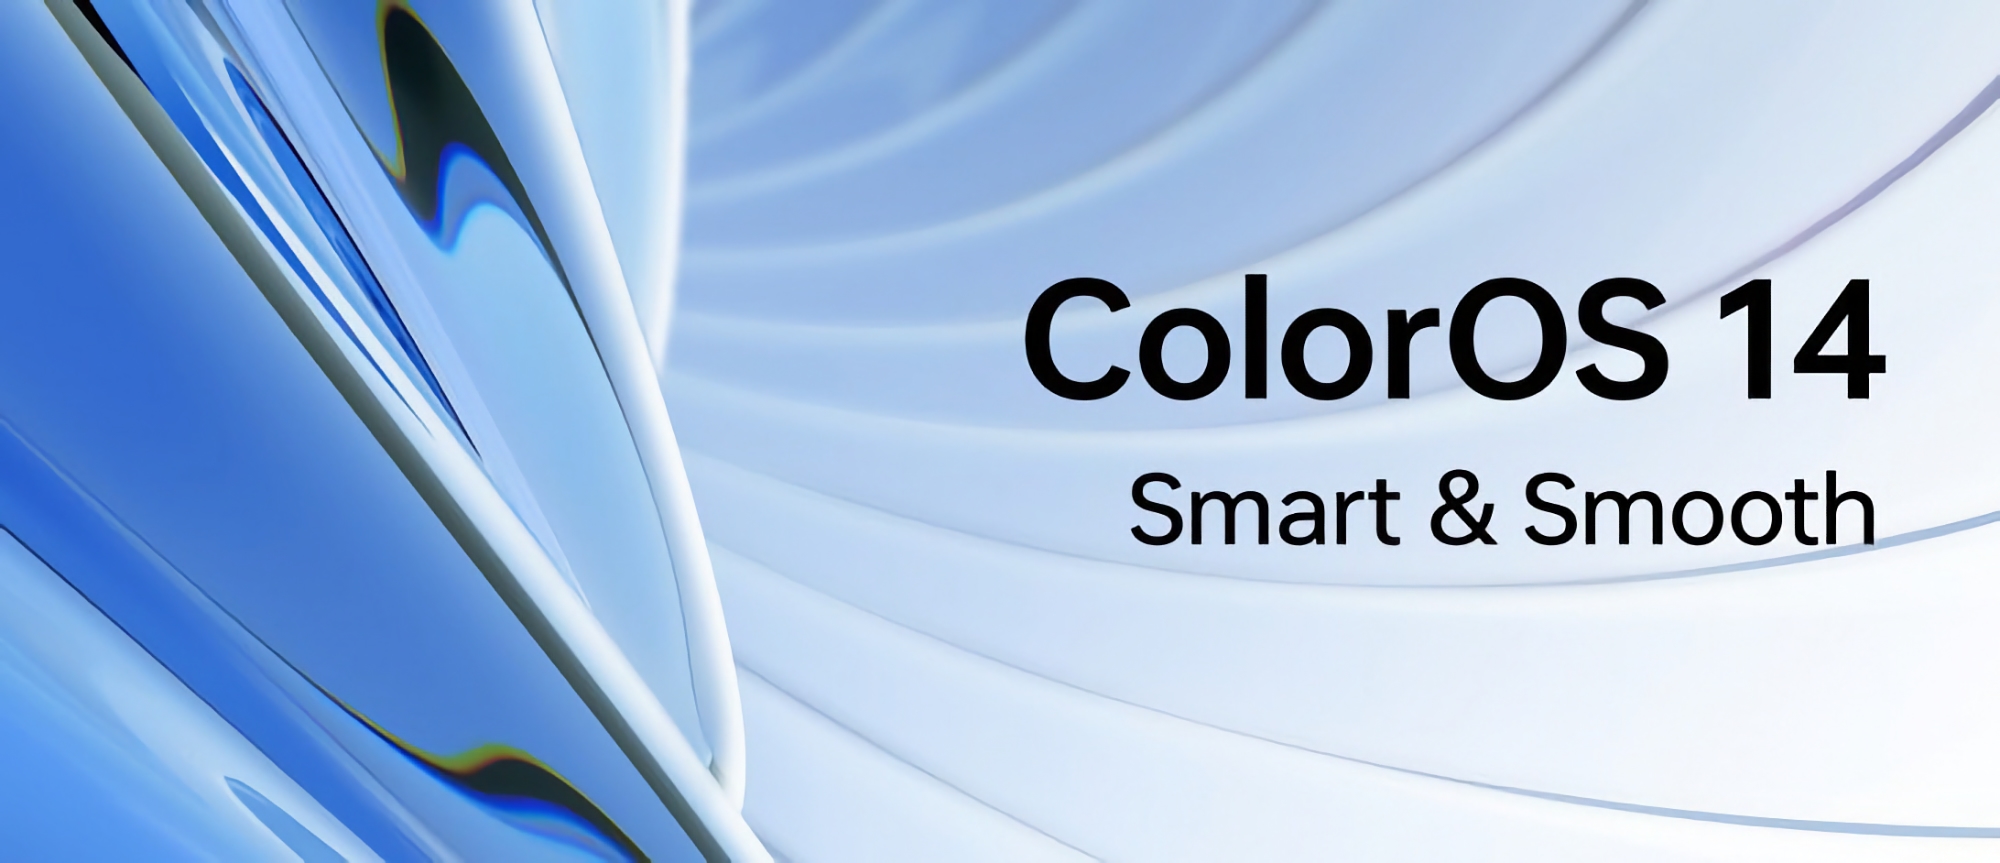 Quando e quali dispositivi OPPO riceveranno ColorOS 14 nel mercato globale?